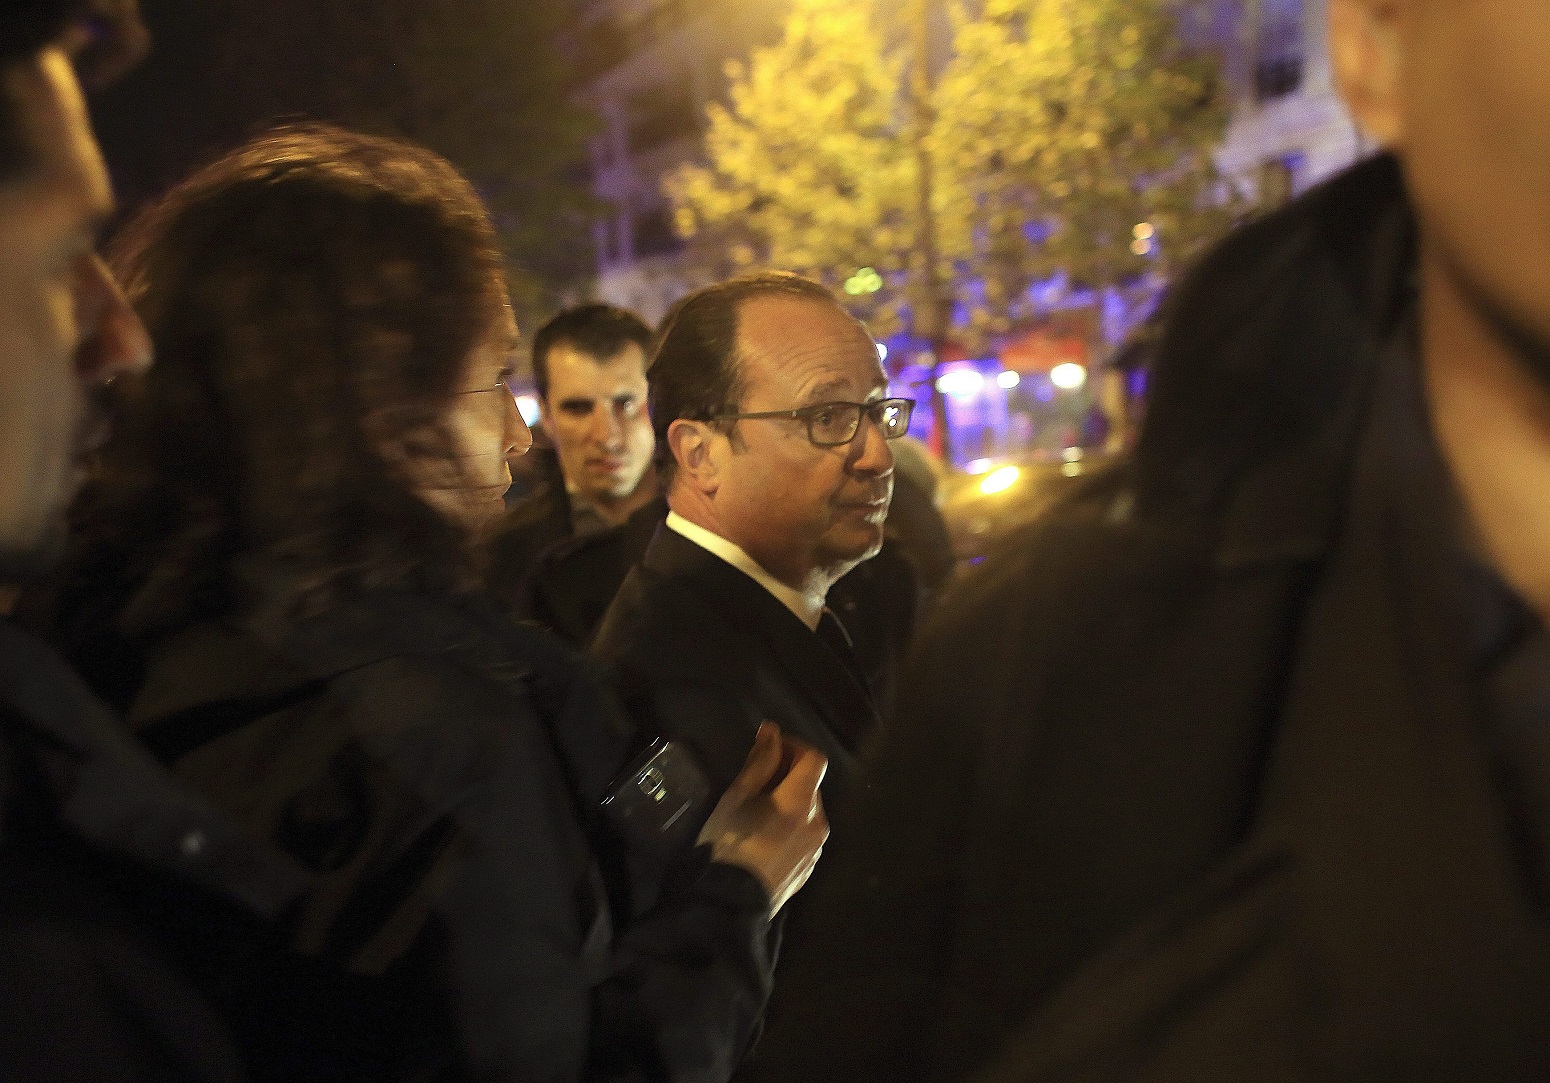 Párizs, 2015. november 14. Francois Hollande francia elnök a párizsi Bataclan koncertteremhez érkezik 2015. november 13-án éjjel. A francia fõvárosban késõ este összehangoltan több merényletet követtek el. A lövöldözésekben és robbanásokban legalább 140 ember meghalt, sokan megsebesültek. Francois Hollande francia elnök egész Franciaország területére rendkívüli állapotot hirdetett és bejelentette a határok lezárását. (MTI/AP/Thibault Camus)